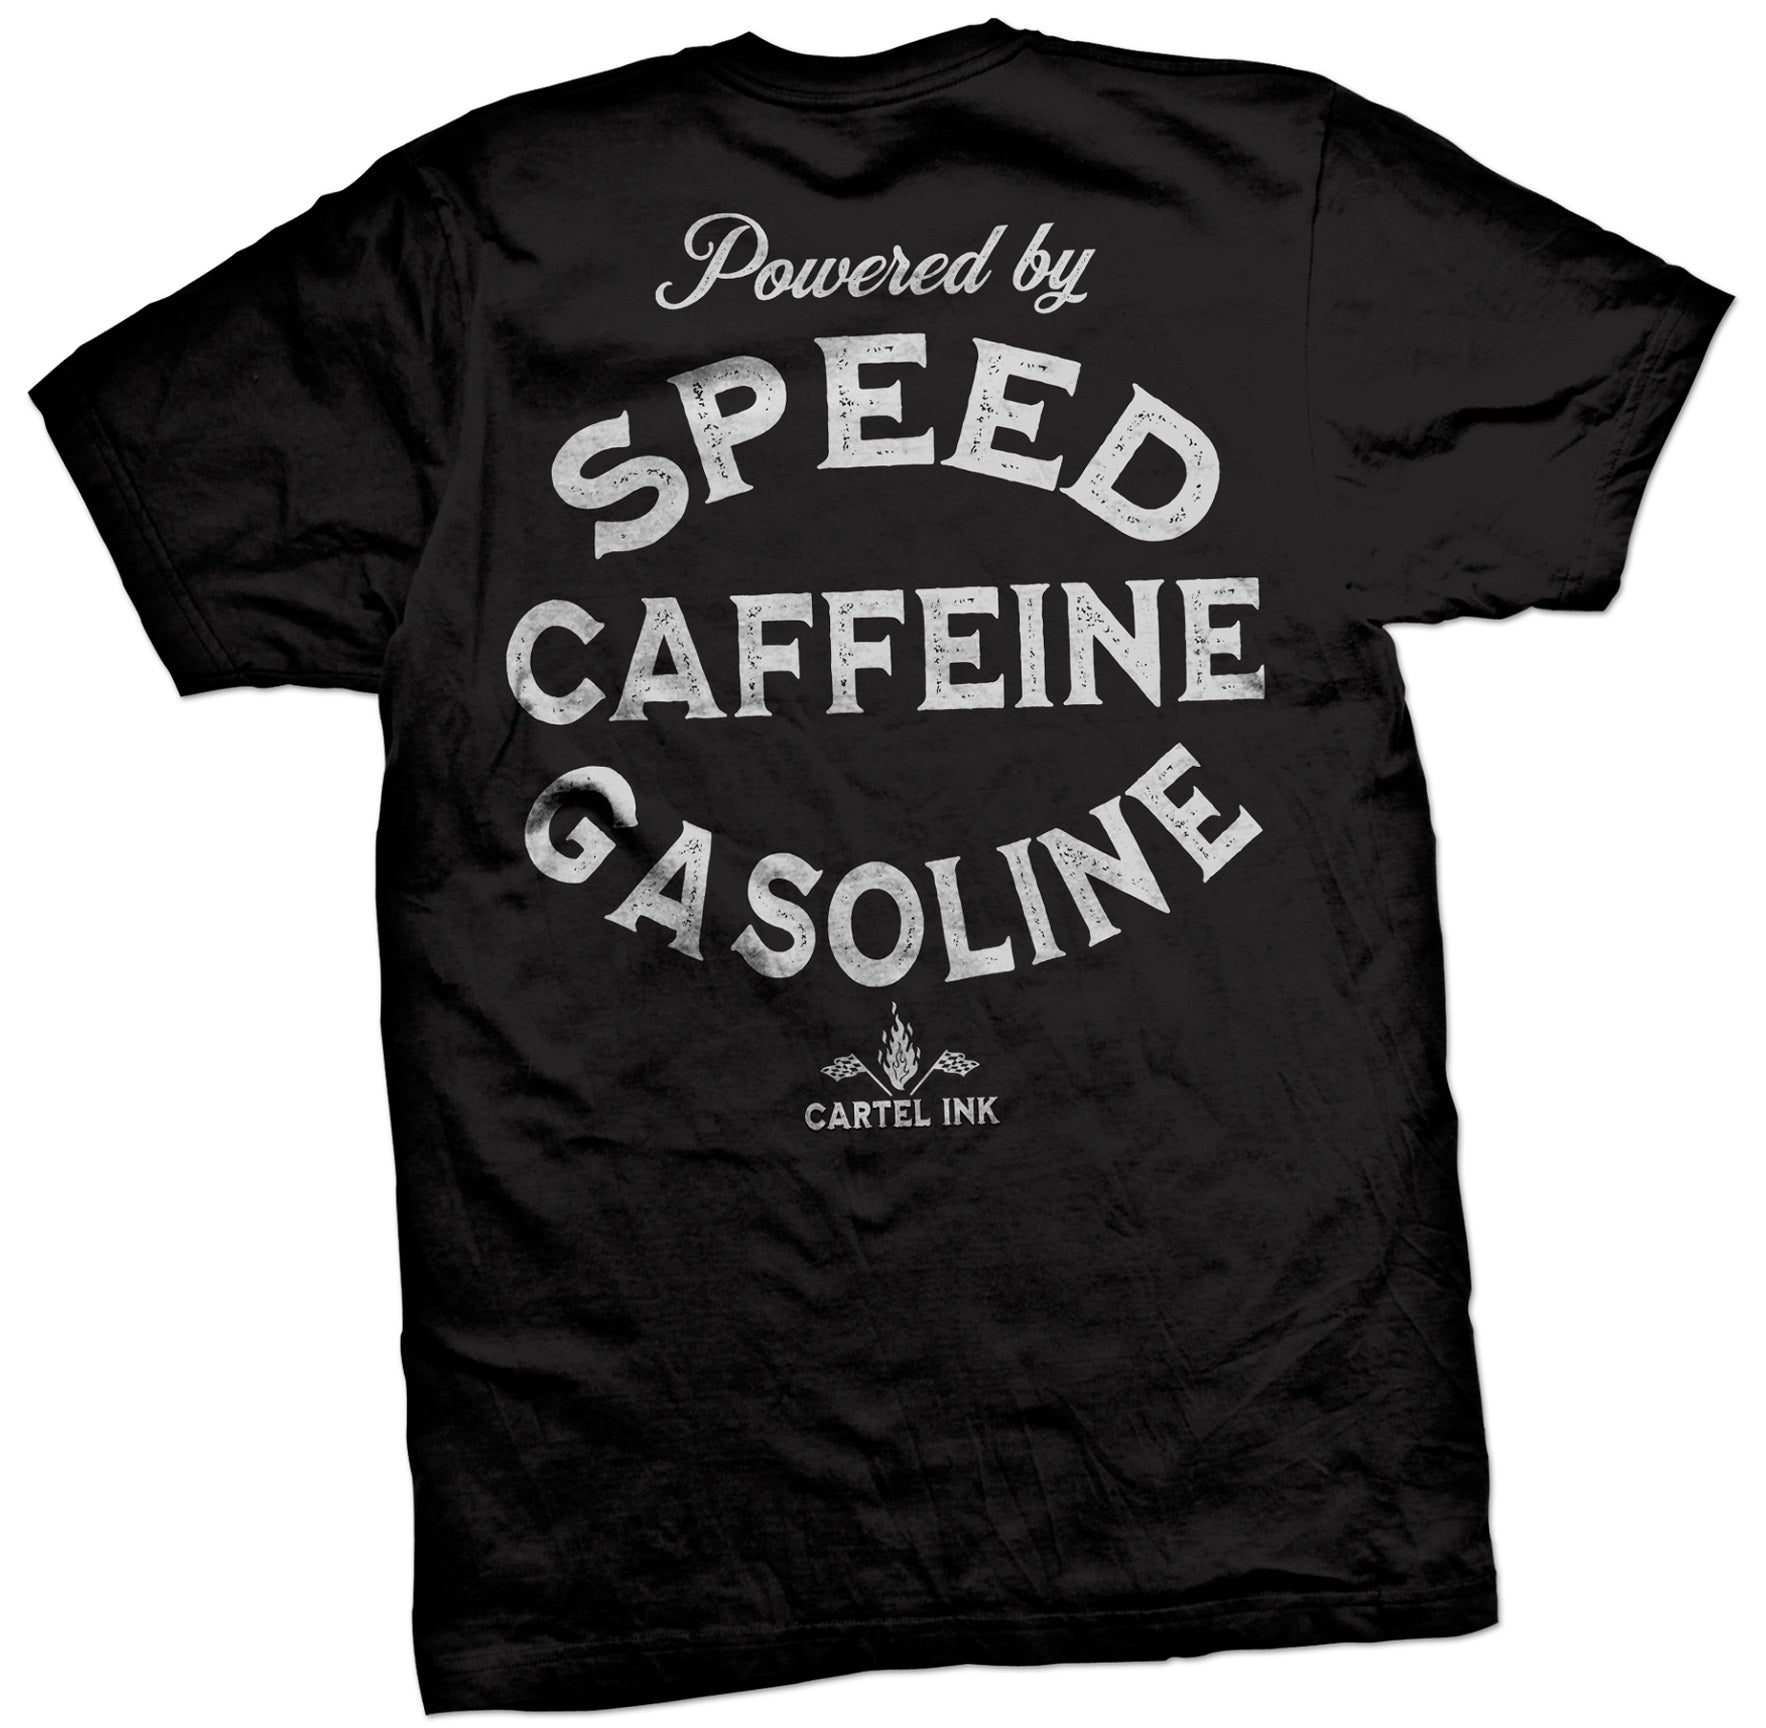 The SPEED CAFFEINE GASOLINE Tee